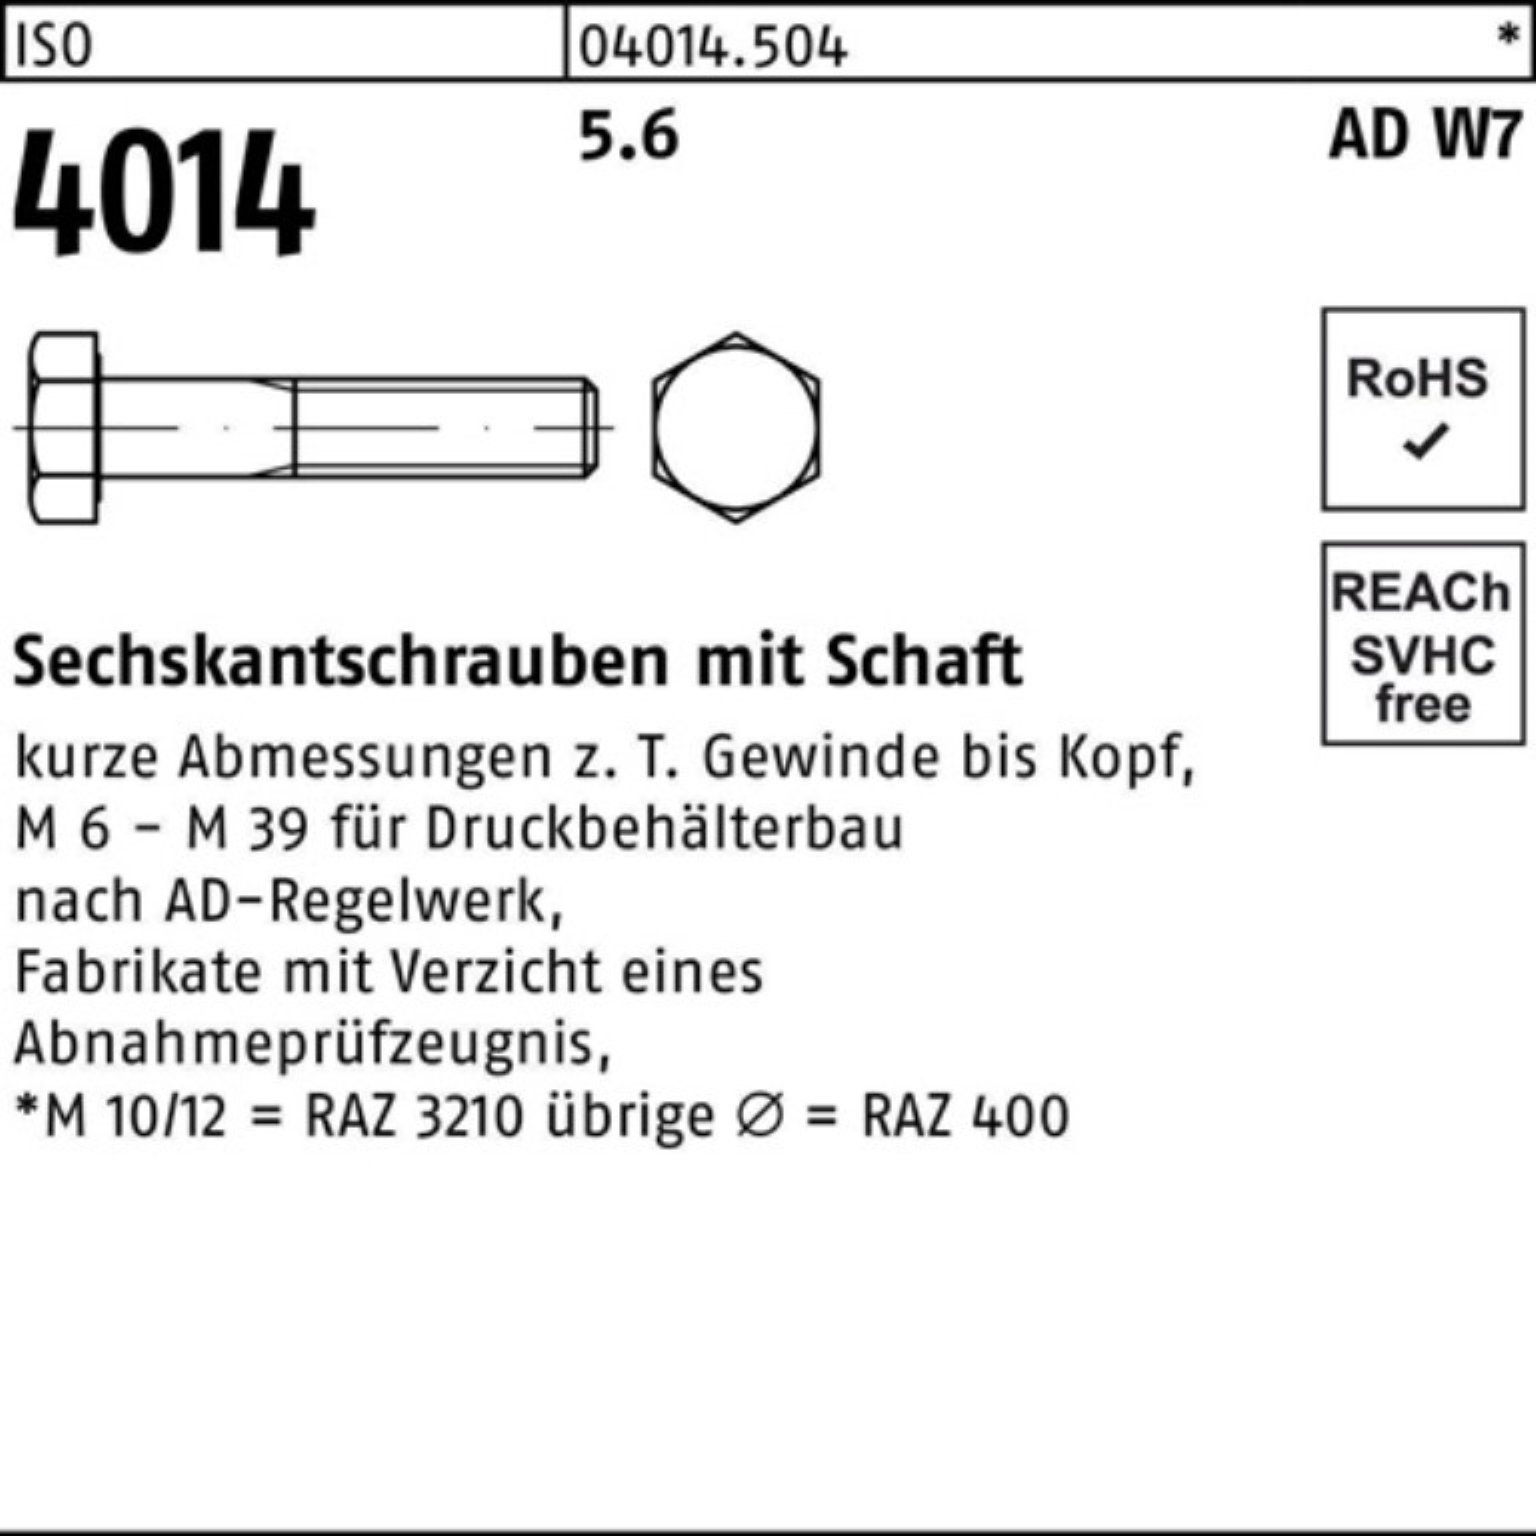 W7 Pack Sechskantschraube Schaft 100er Sechskantschraube 150 ISO 4014 Stück 10 Bufab M24x 5.6